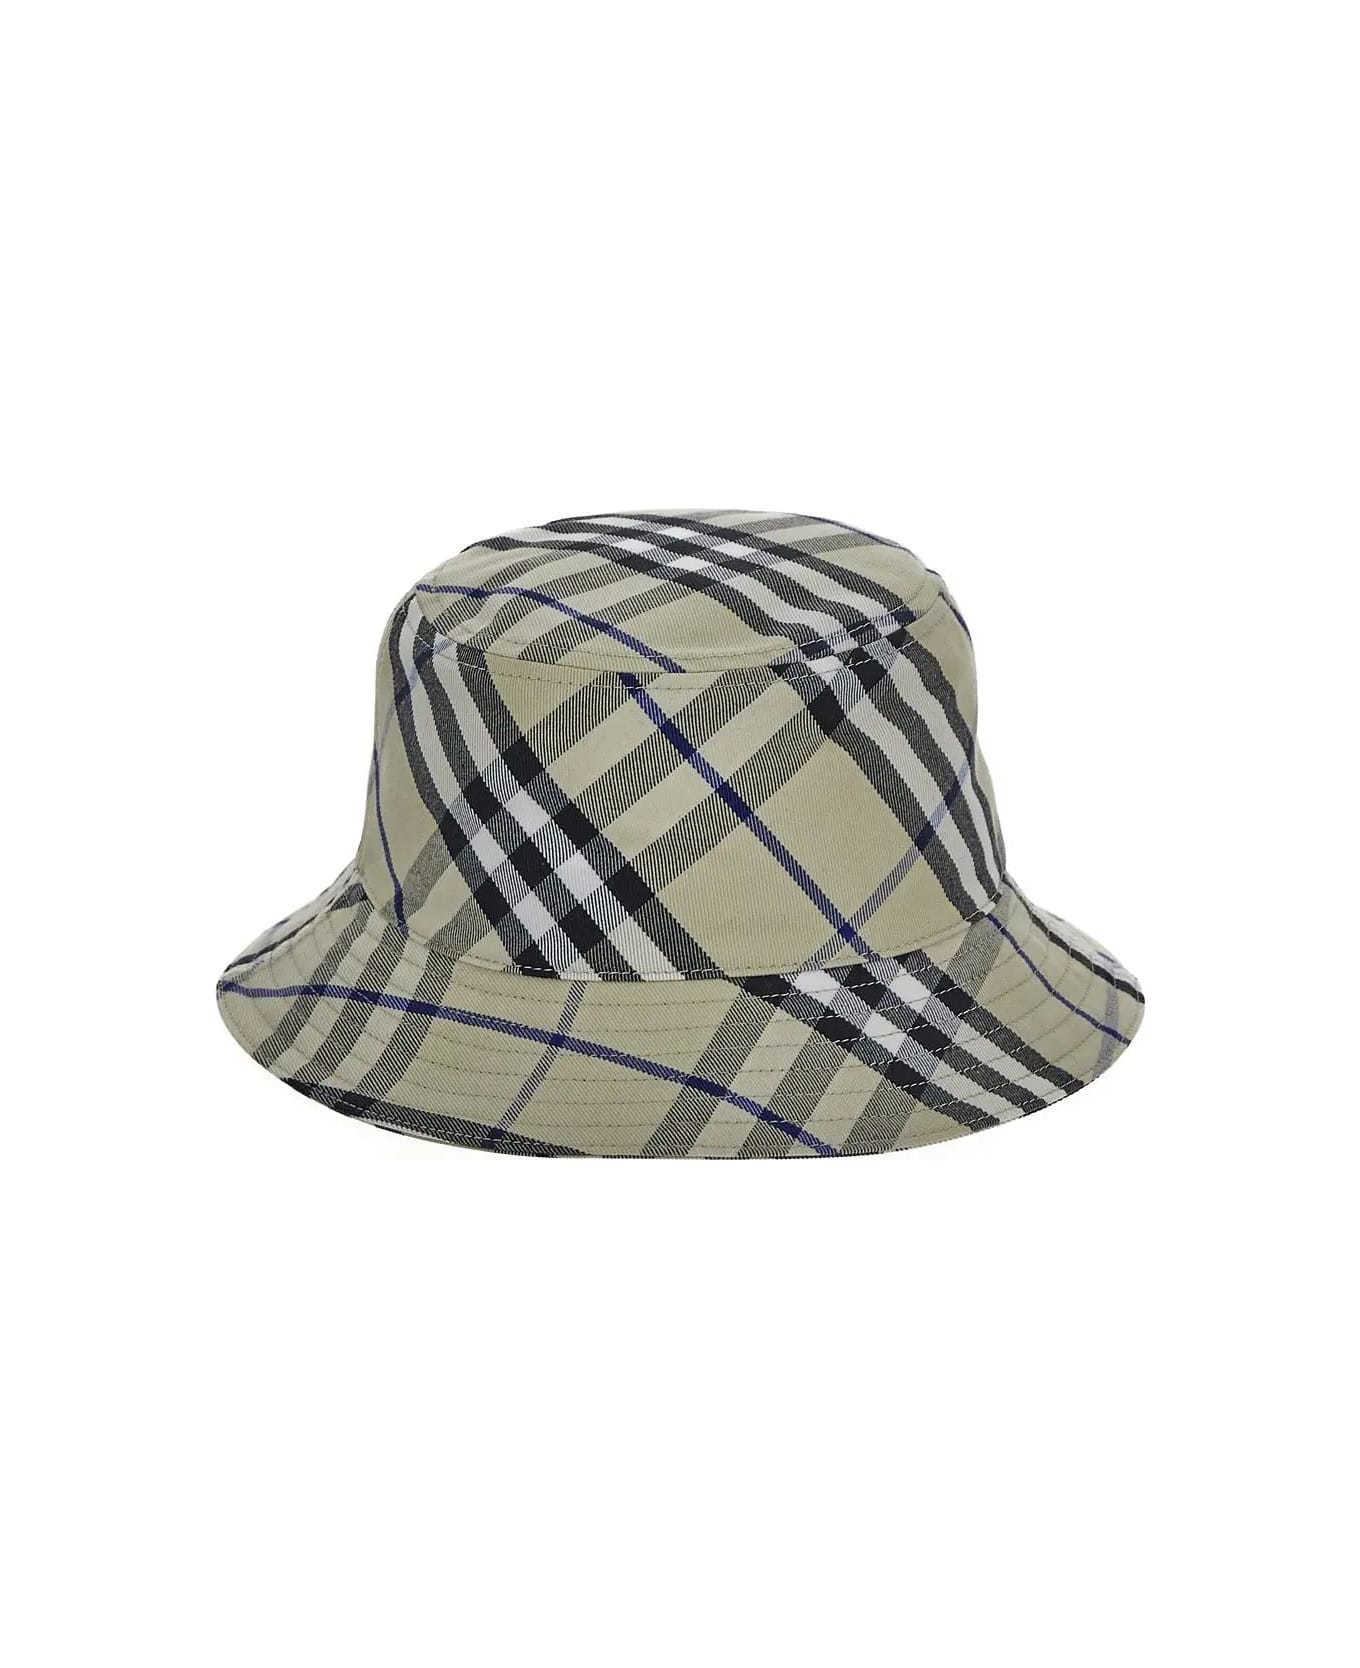 Burberry Bucket Hat - Lichen 帽子